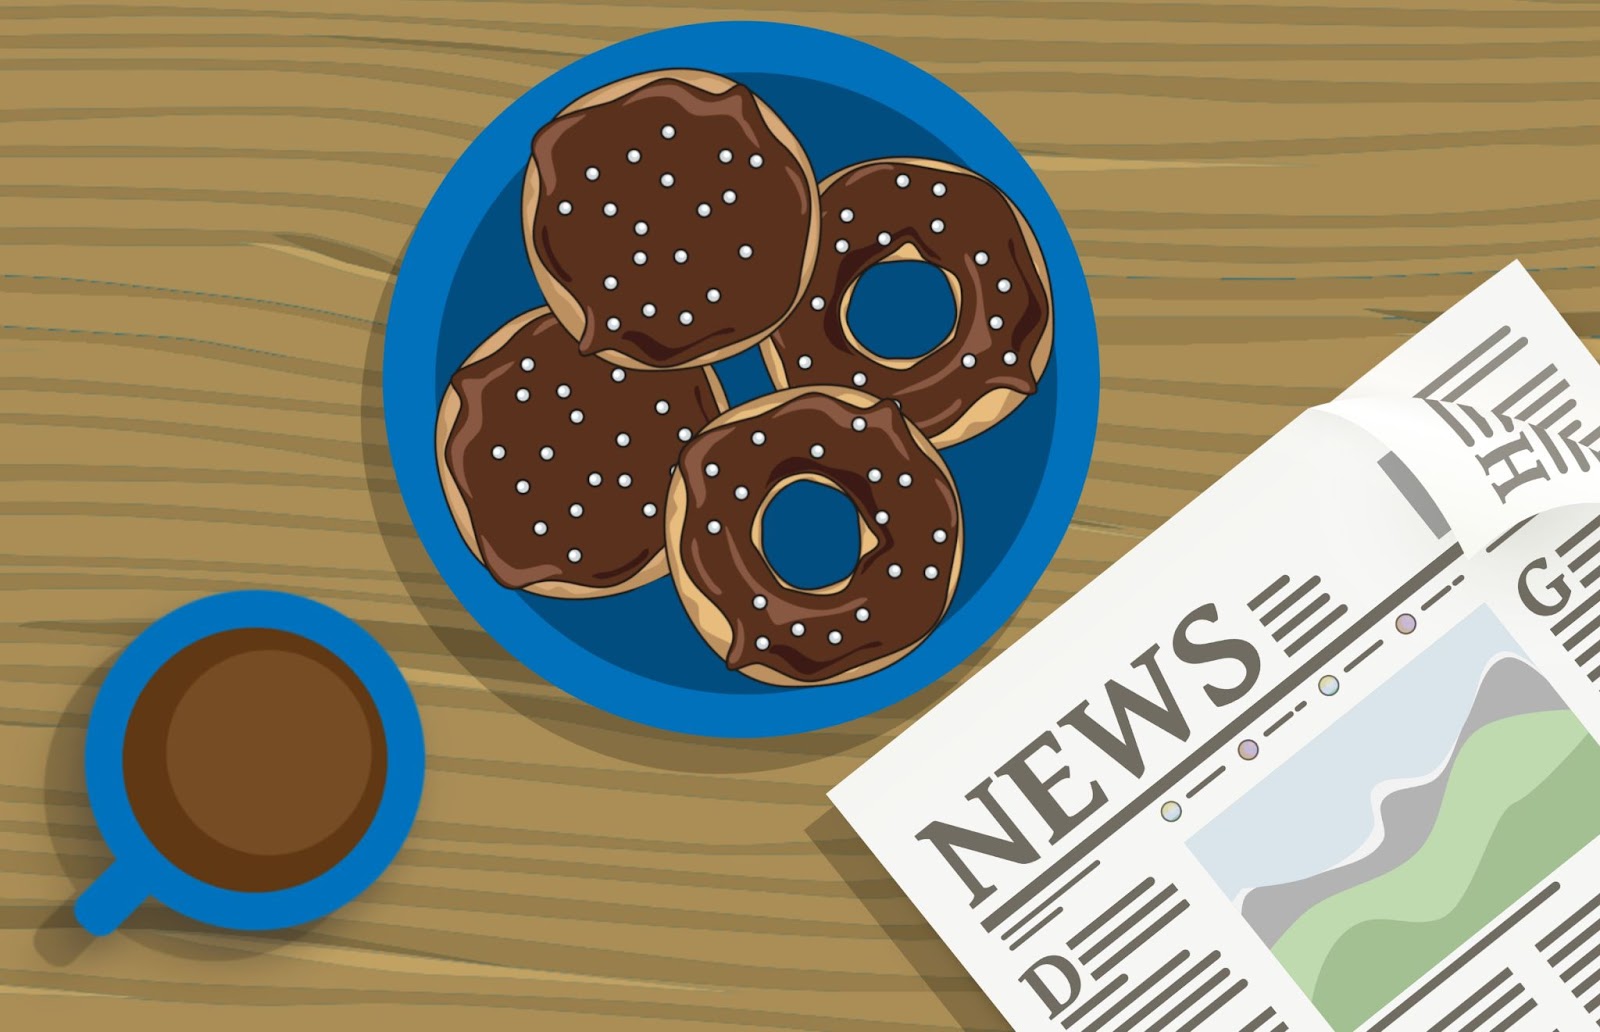 La imagen muestra café, donuts y un periódico.